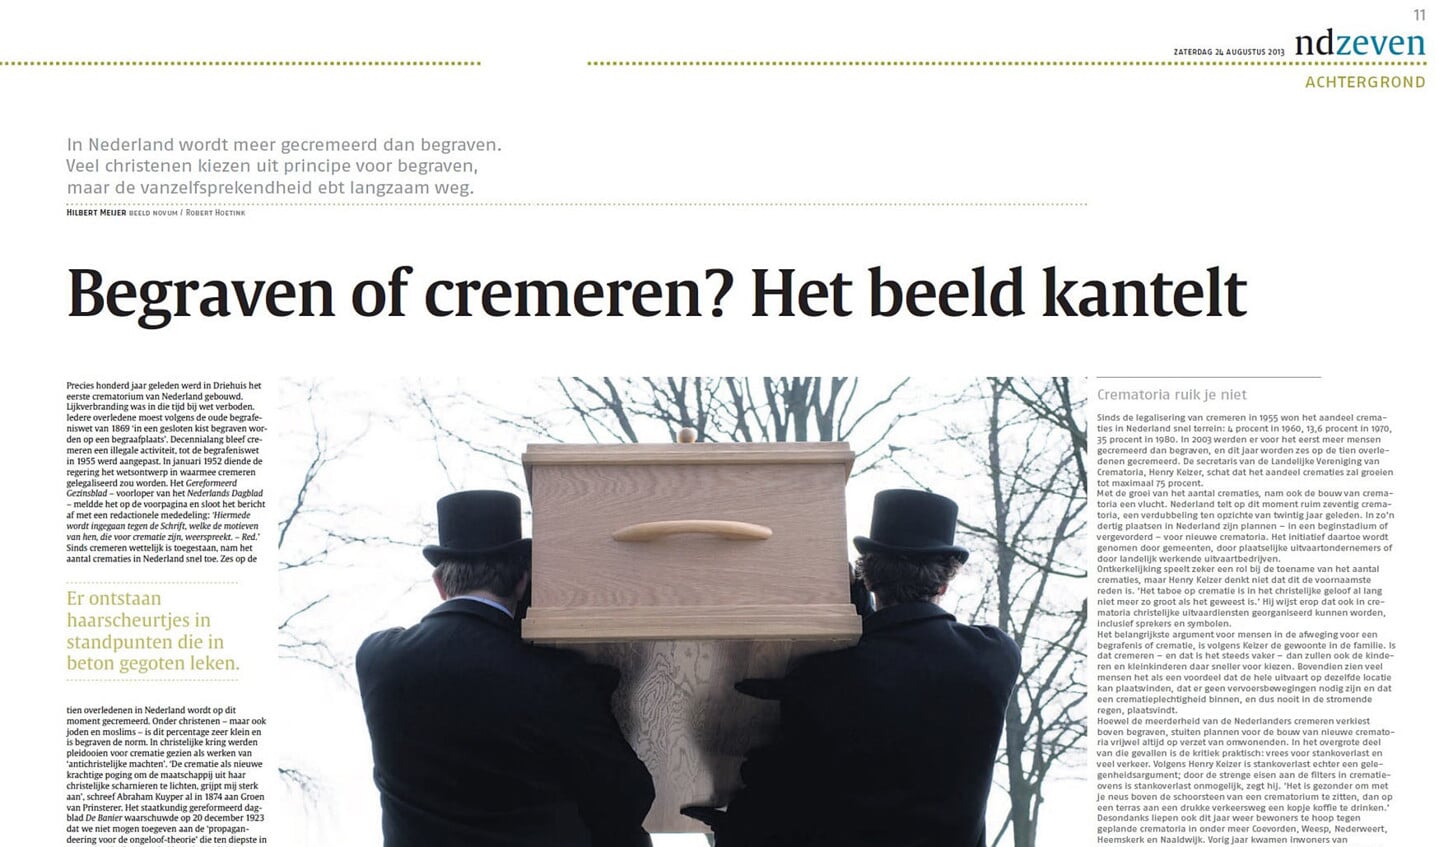 Paginabeeld uit 2013, en uitsnede van een hoofdartikel van Pieter Jongeling.